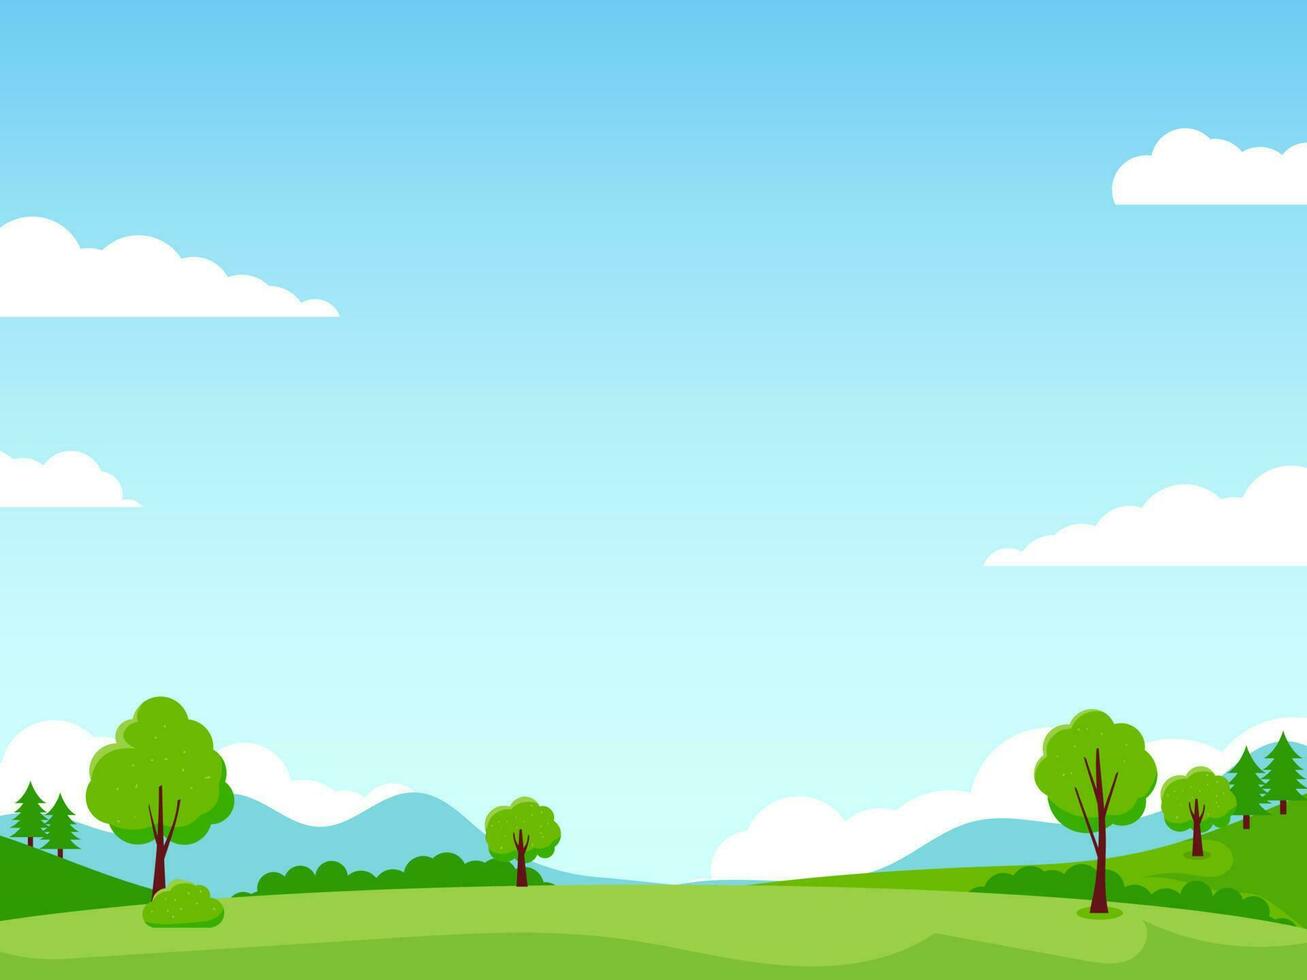 Prairie paysage vecteur avec vert herbe et bleu ciel adapté pour Contexte ou illustration